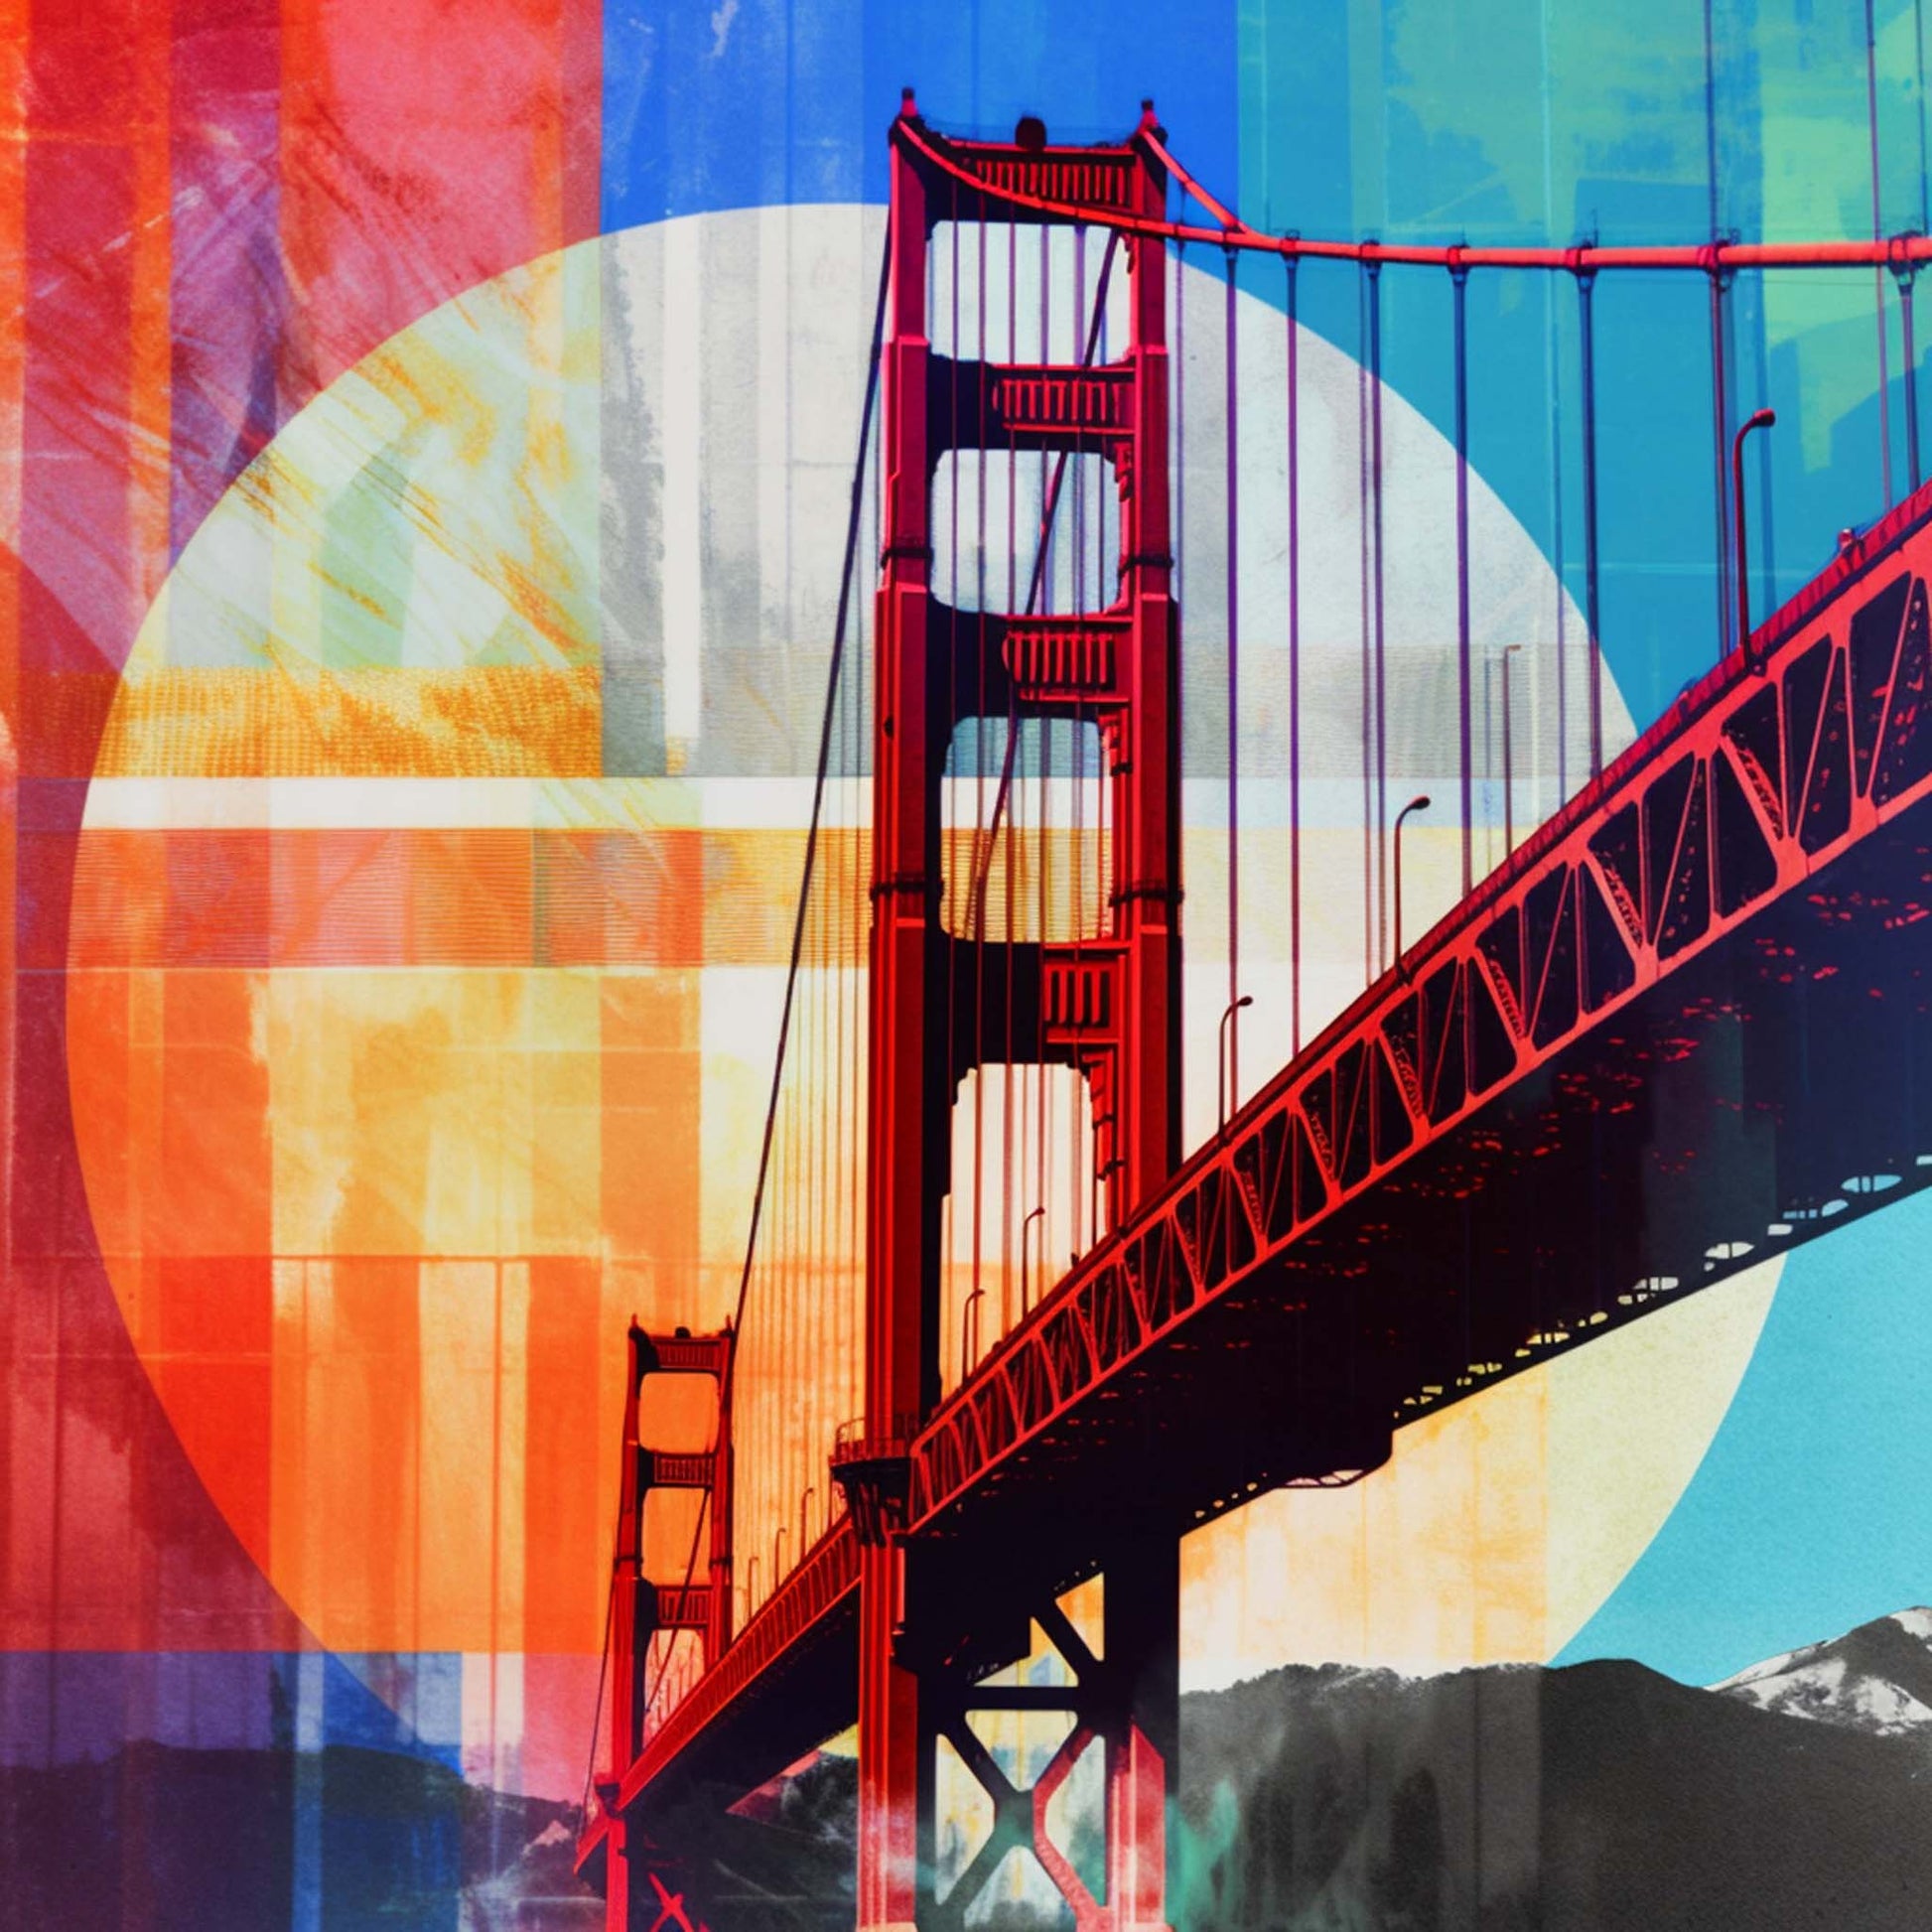 Urbanisto - San Fransisco - Wandbild in der Stilrichtung der Pop-Art